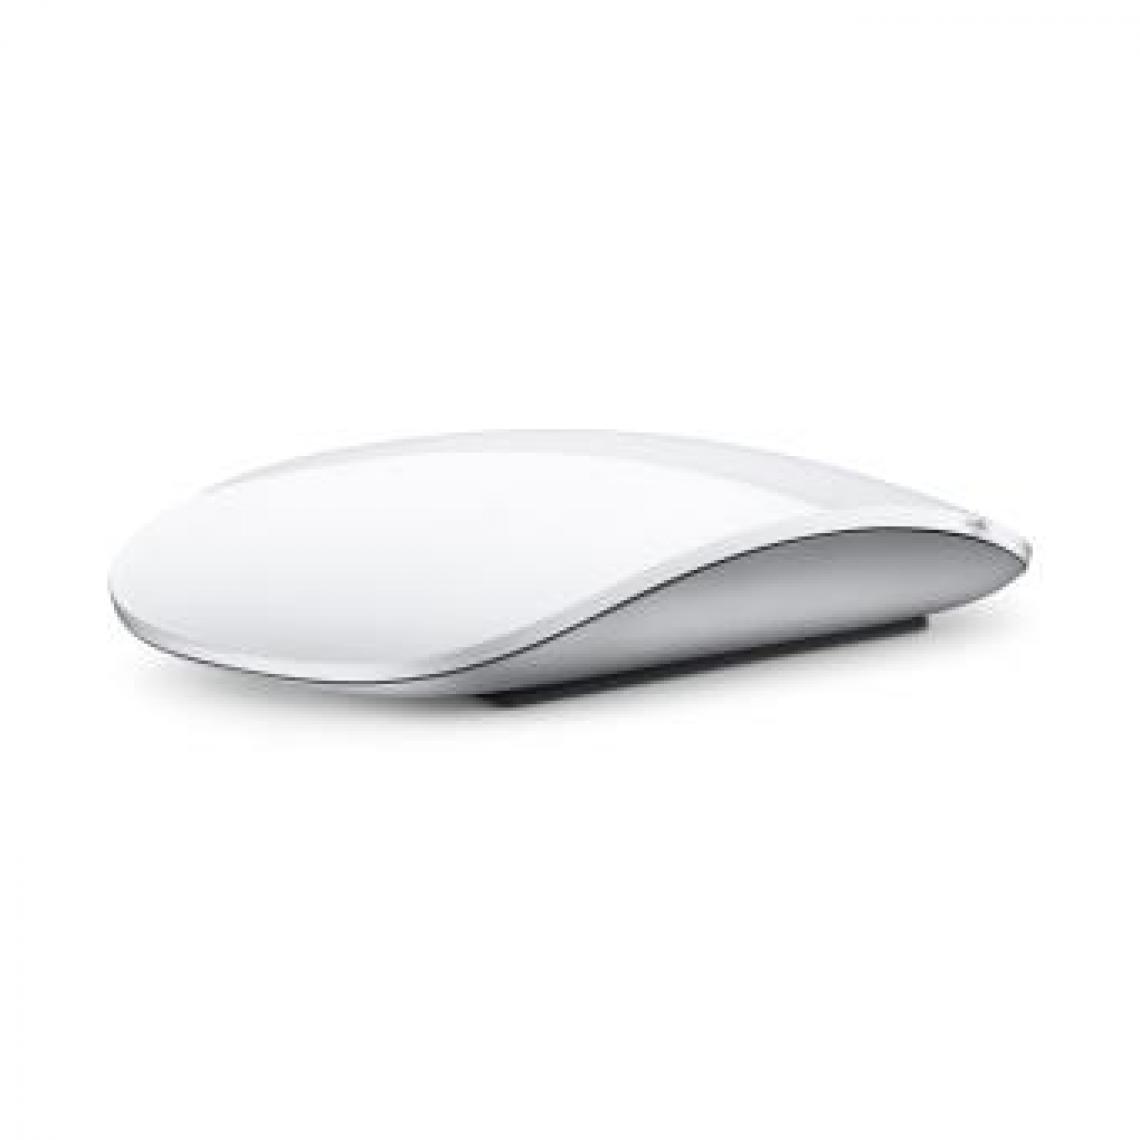 Apple - Souris sans fil Magic mouse silver - Souris